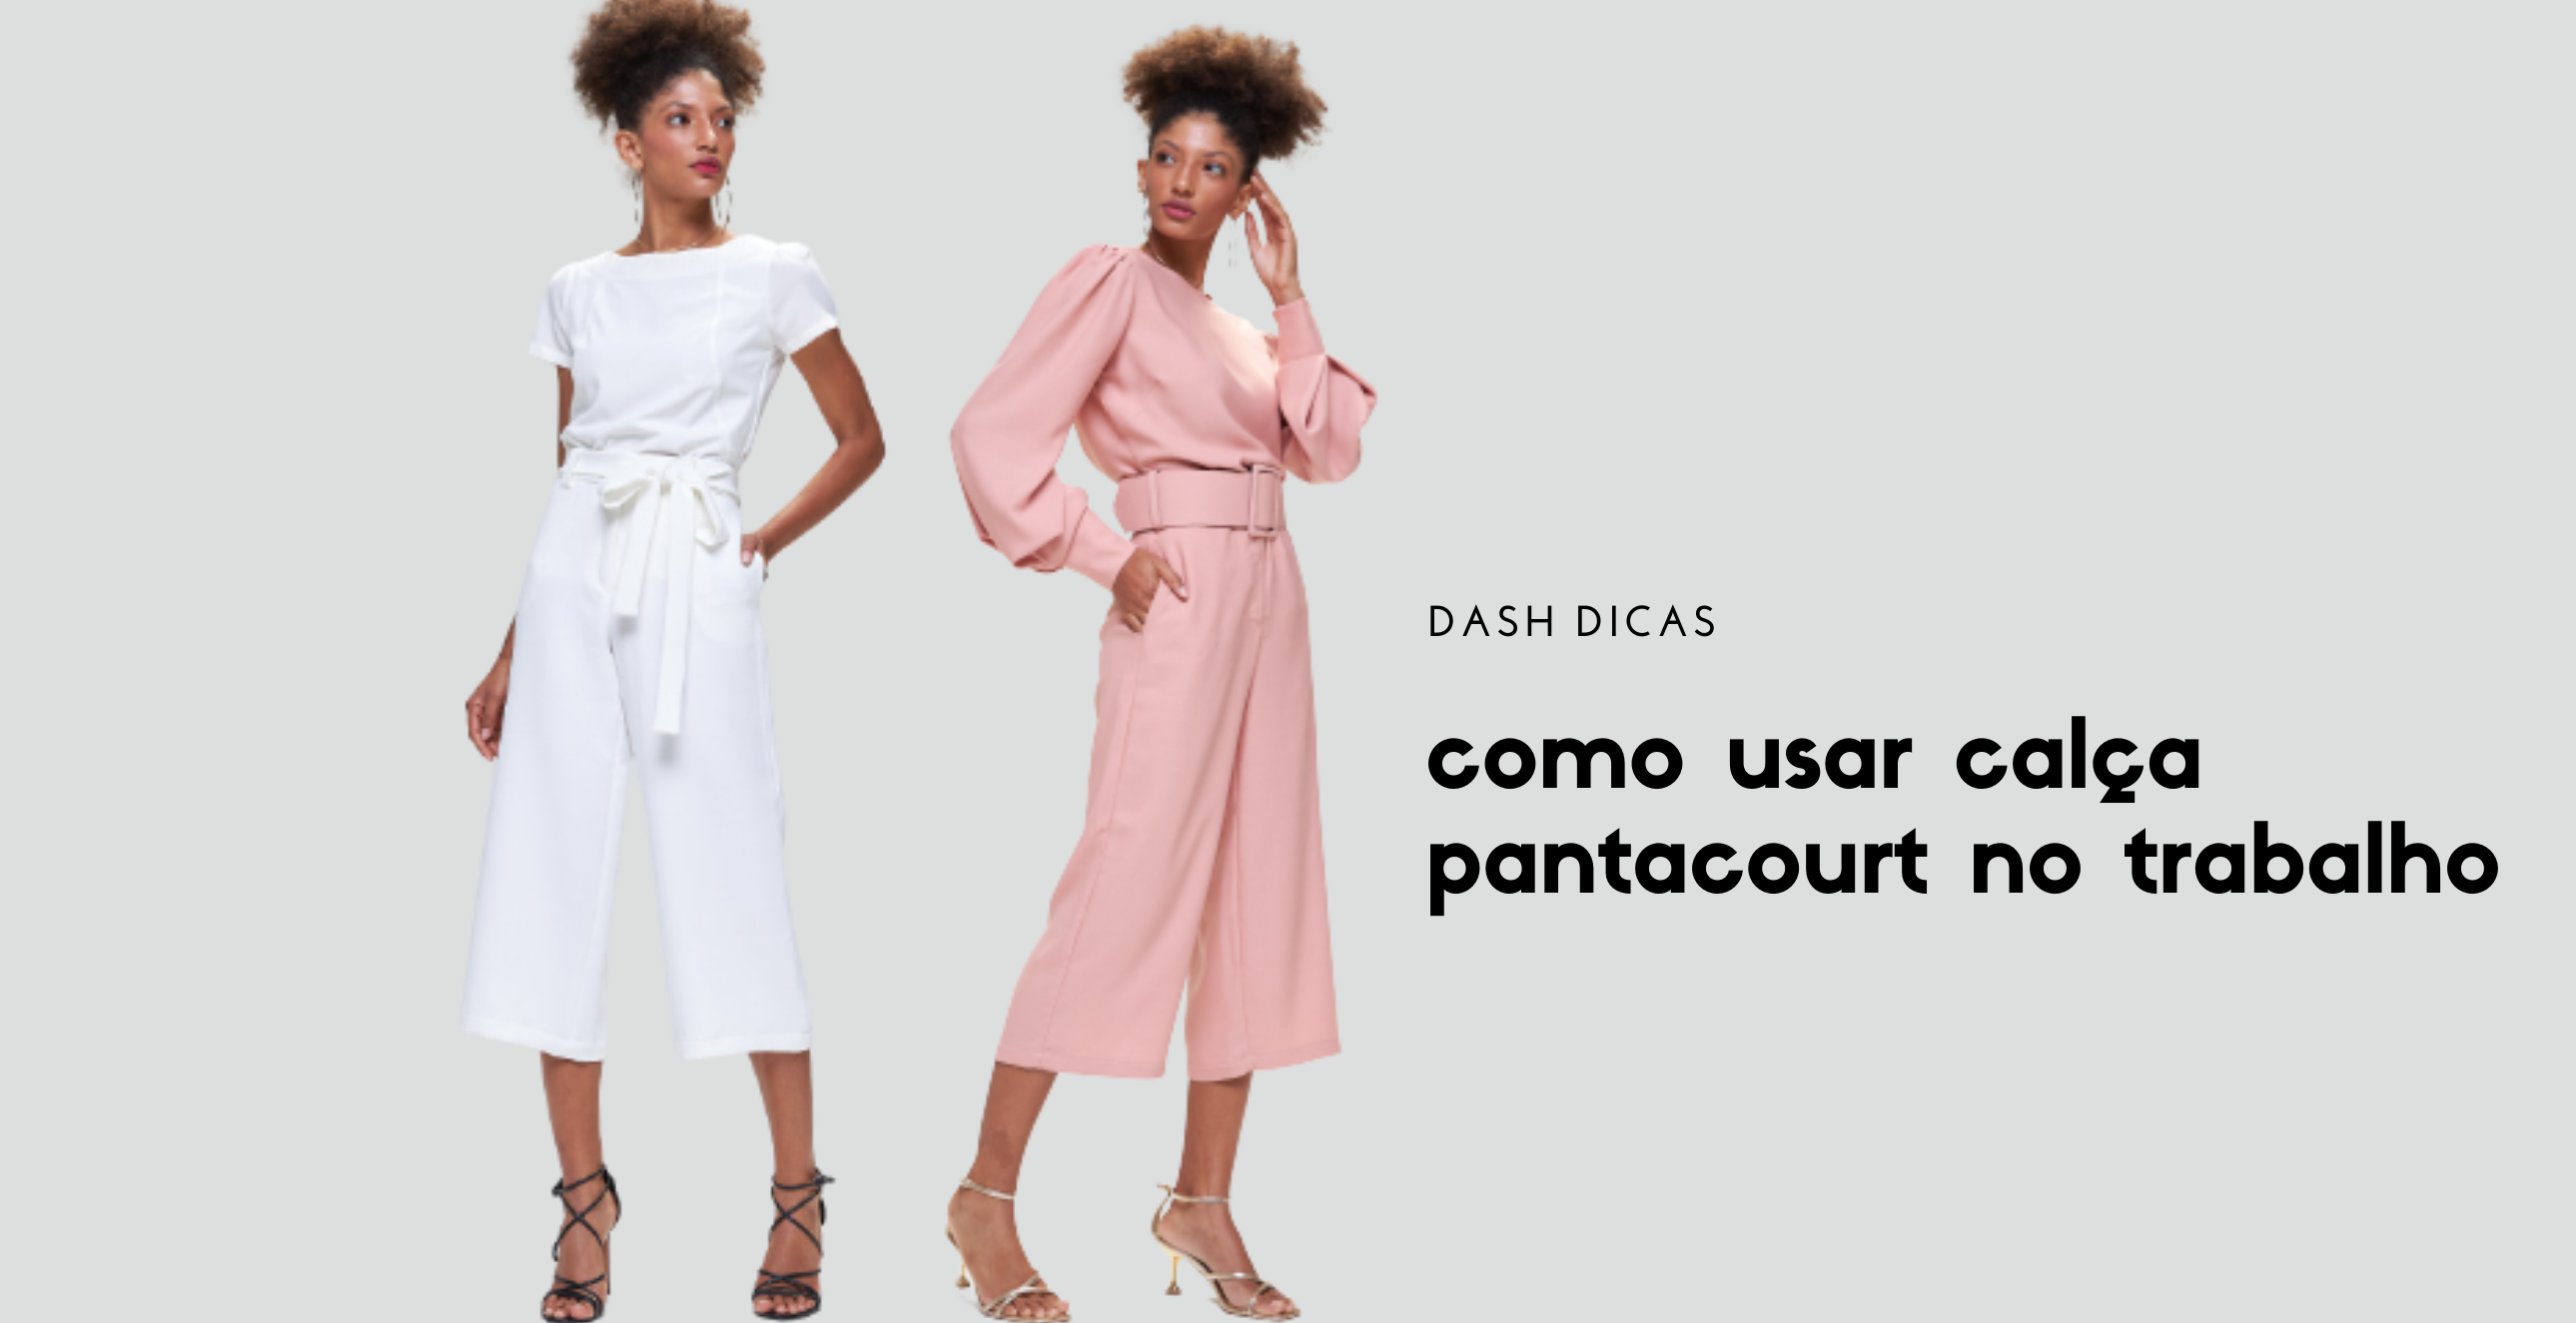 Duas modelos vestindo calça pantacourt, uma na cor branca e outra na cor rosa